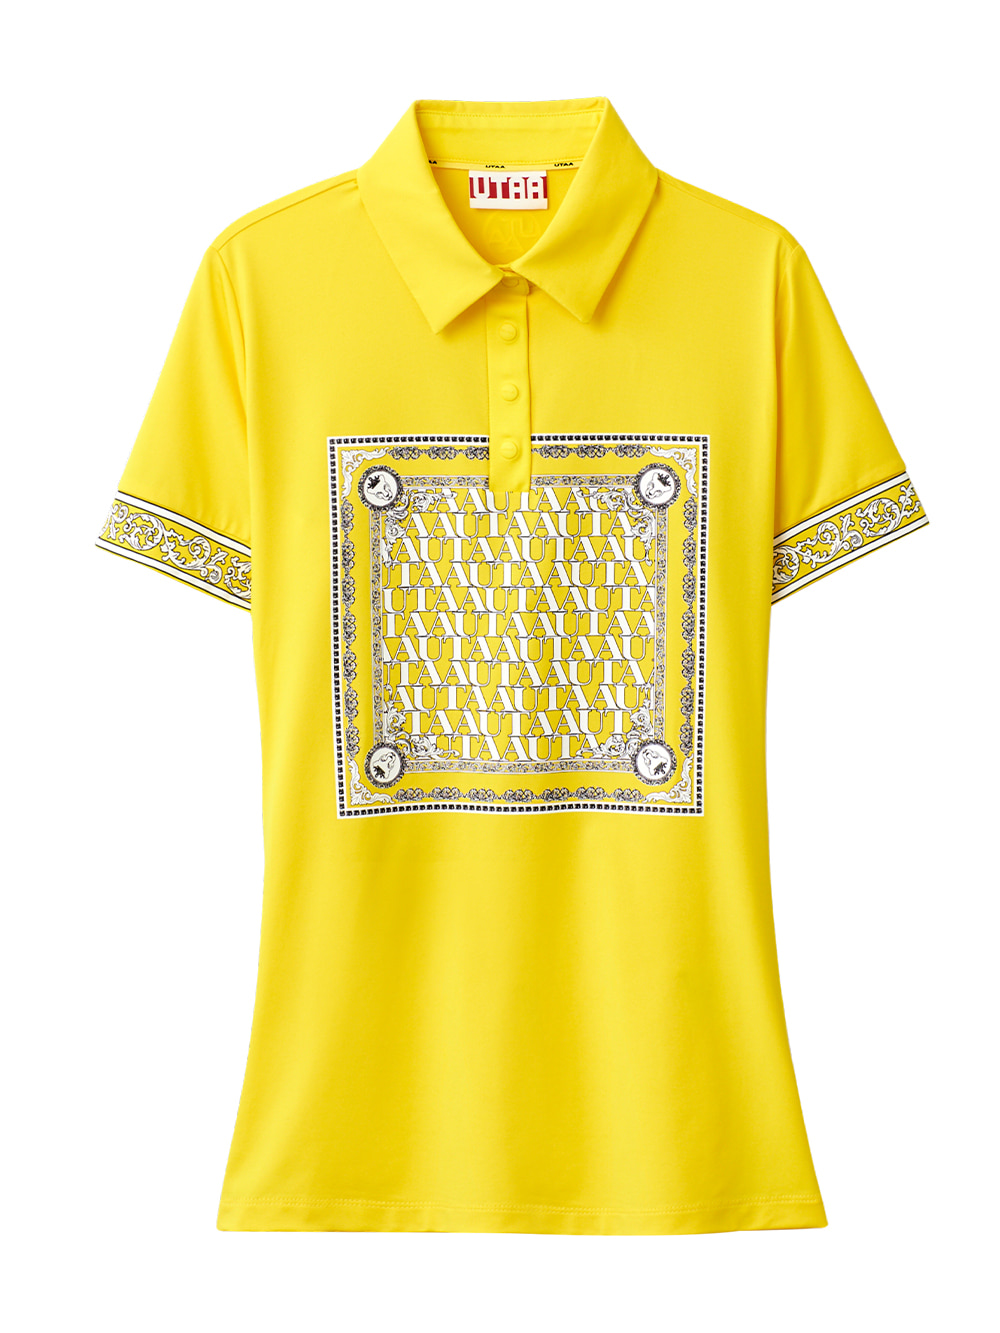 UTAA Swing Fit Blanc Baroque PK T-Shirts : Yellow (UB2TSF340YE)